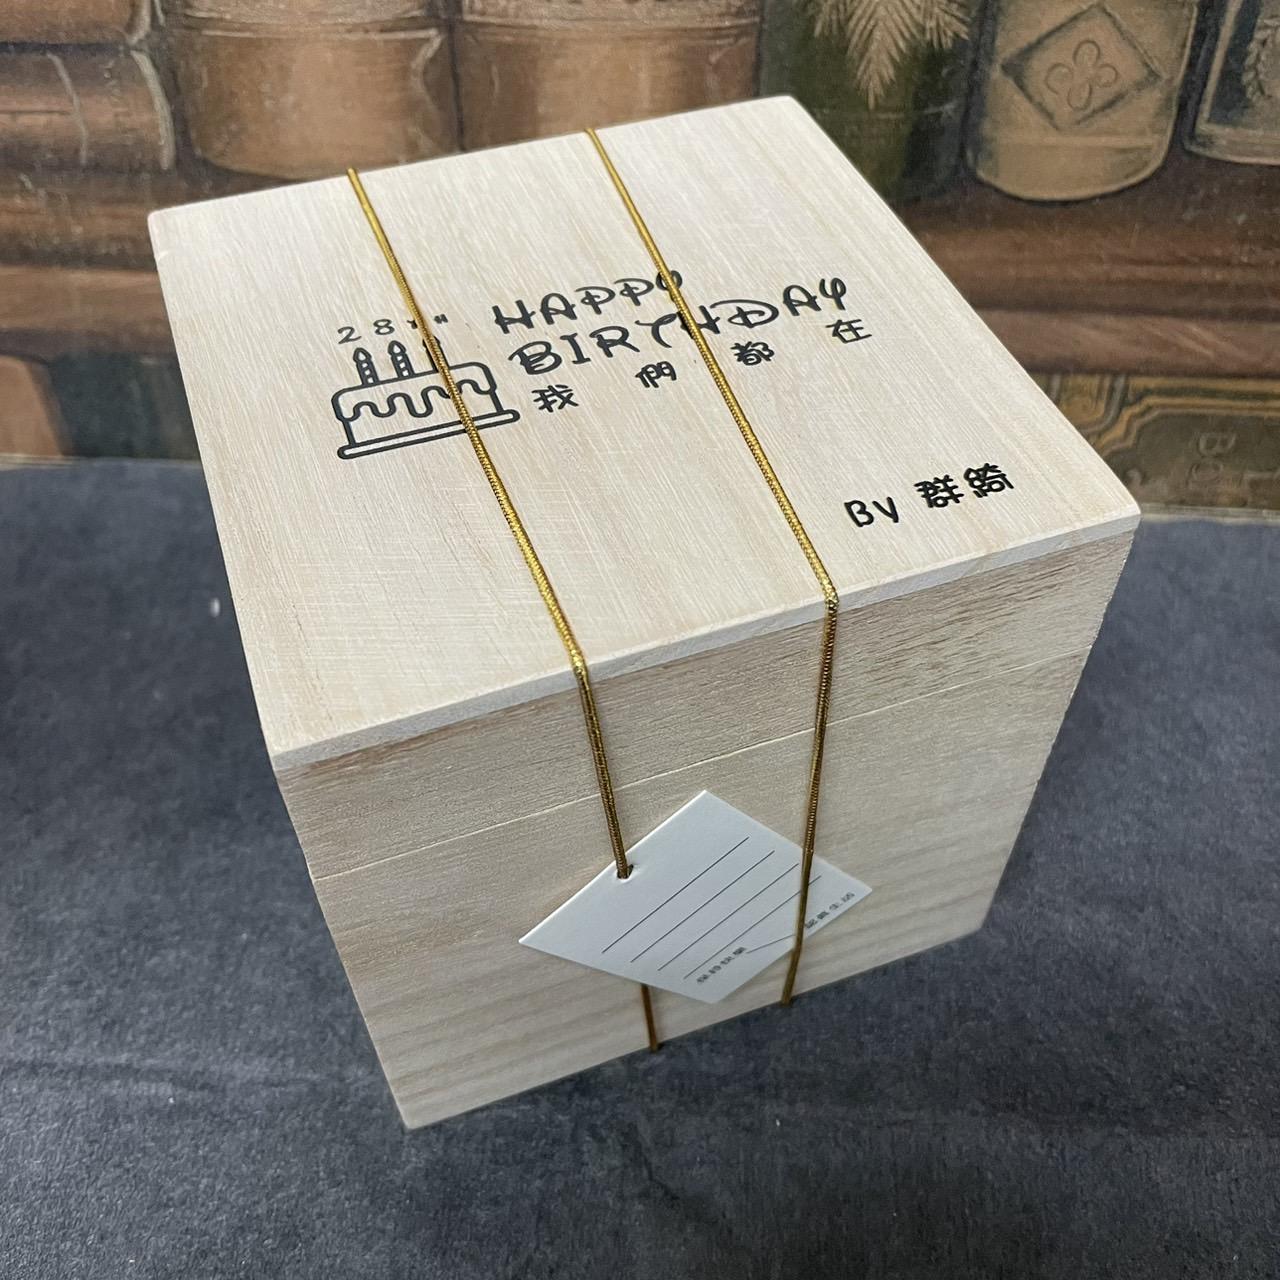 創意刻字威士忌杯 客製化富士山杯 客製玻璃杯刻字 附木盒